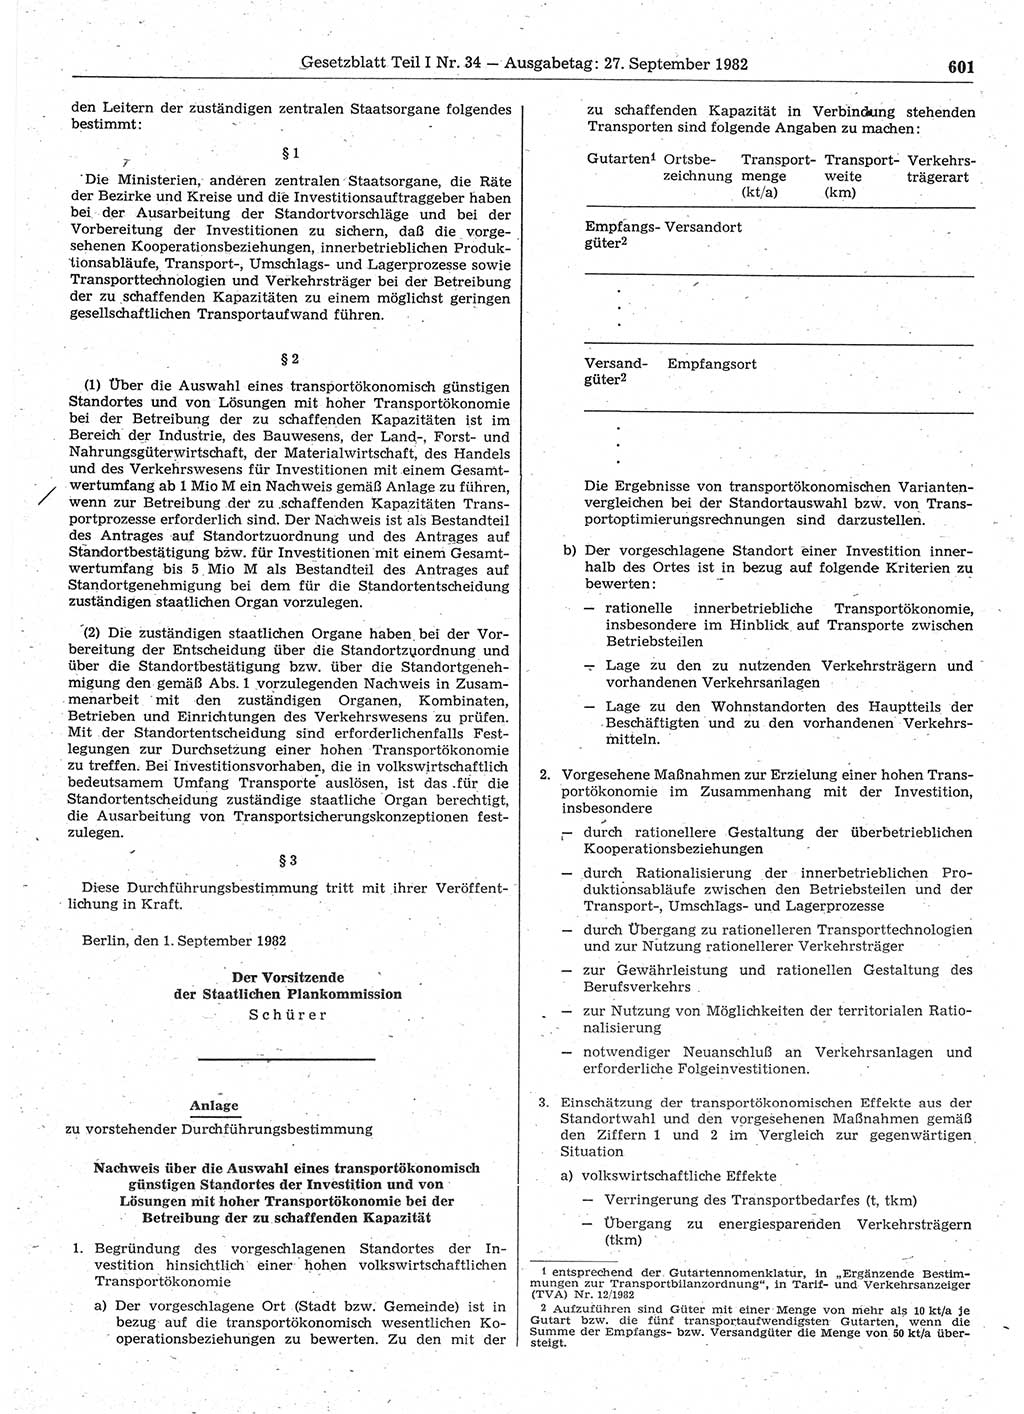 Gesetzblatt (GBl.) der Deutschen Demokratischen Republik (DDR) Teil Ⅰ 1982, Seite 601 (GBl. DDR Ⅰ 1982, S. 601)